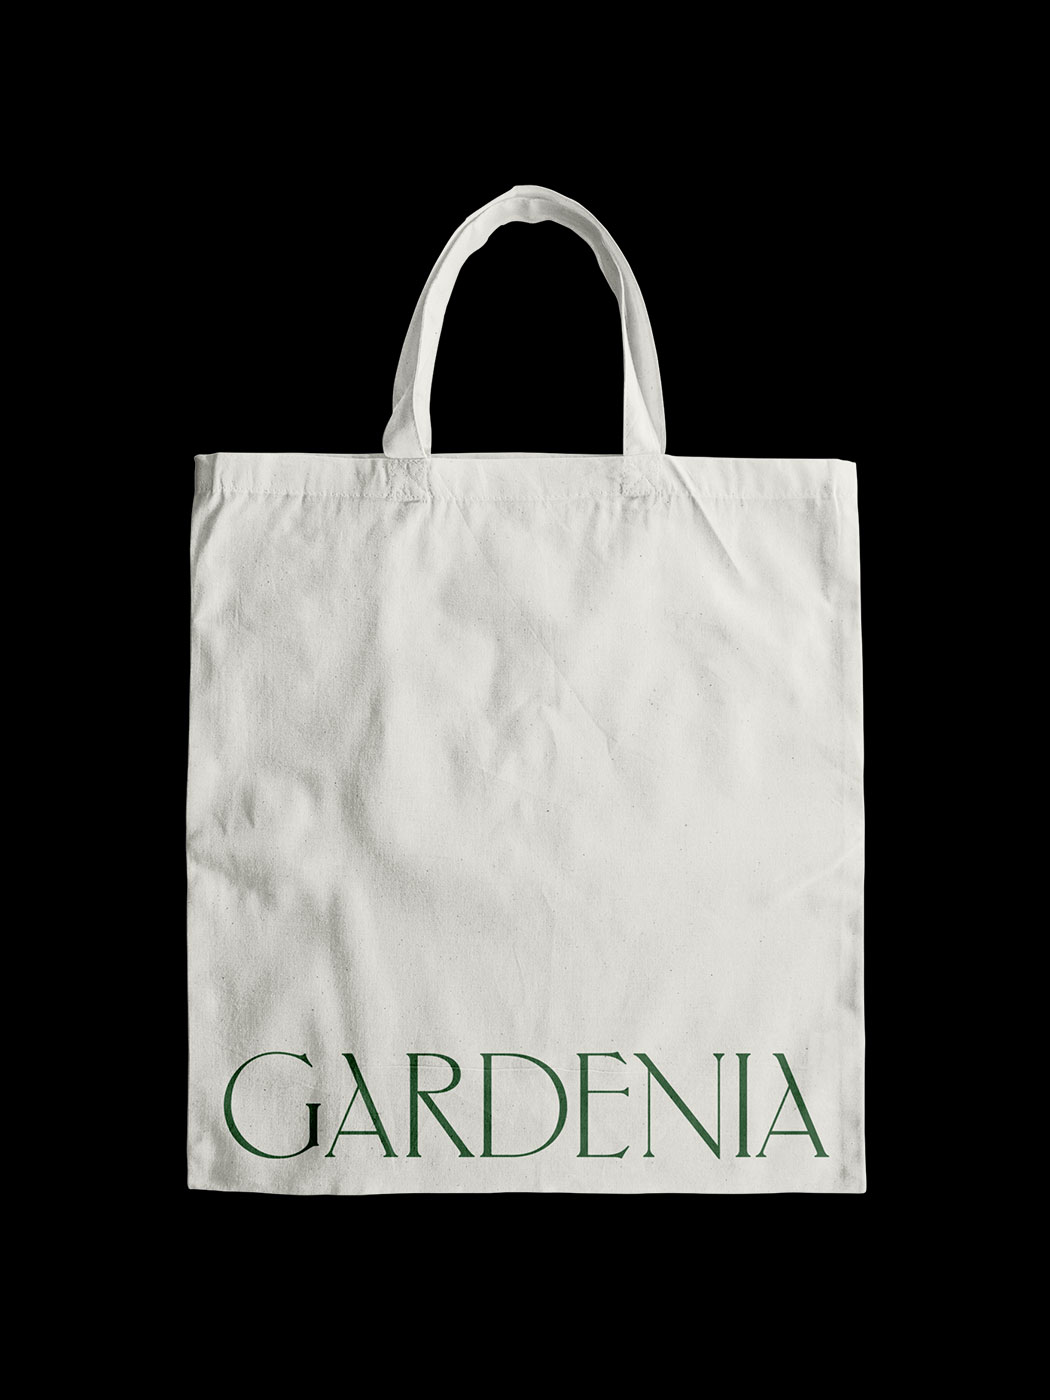 Studio-Hrastar-Gardenia-Tote-Bag